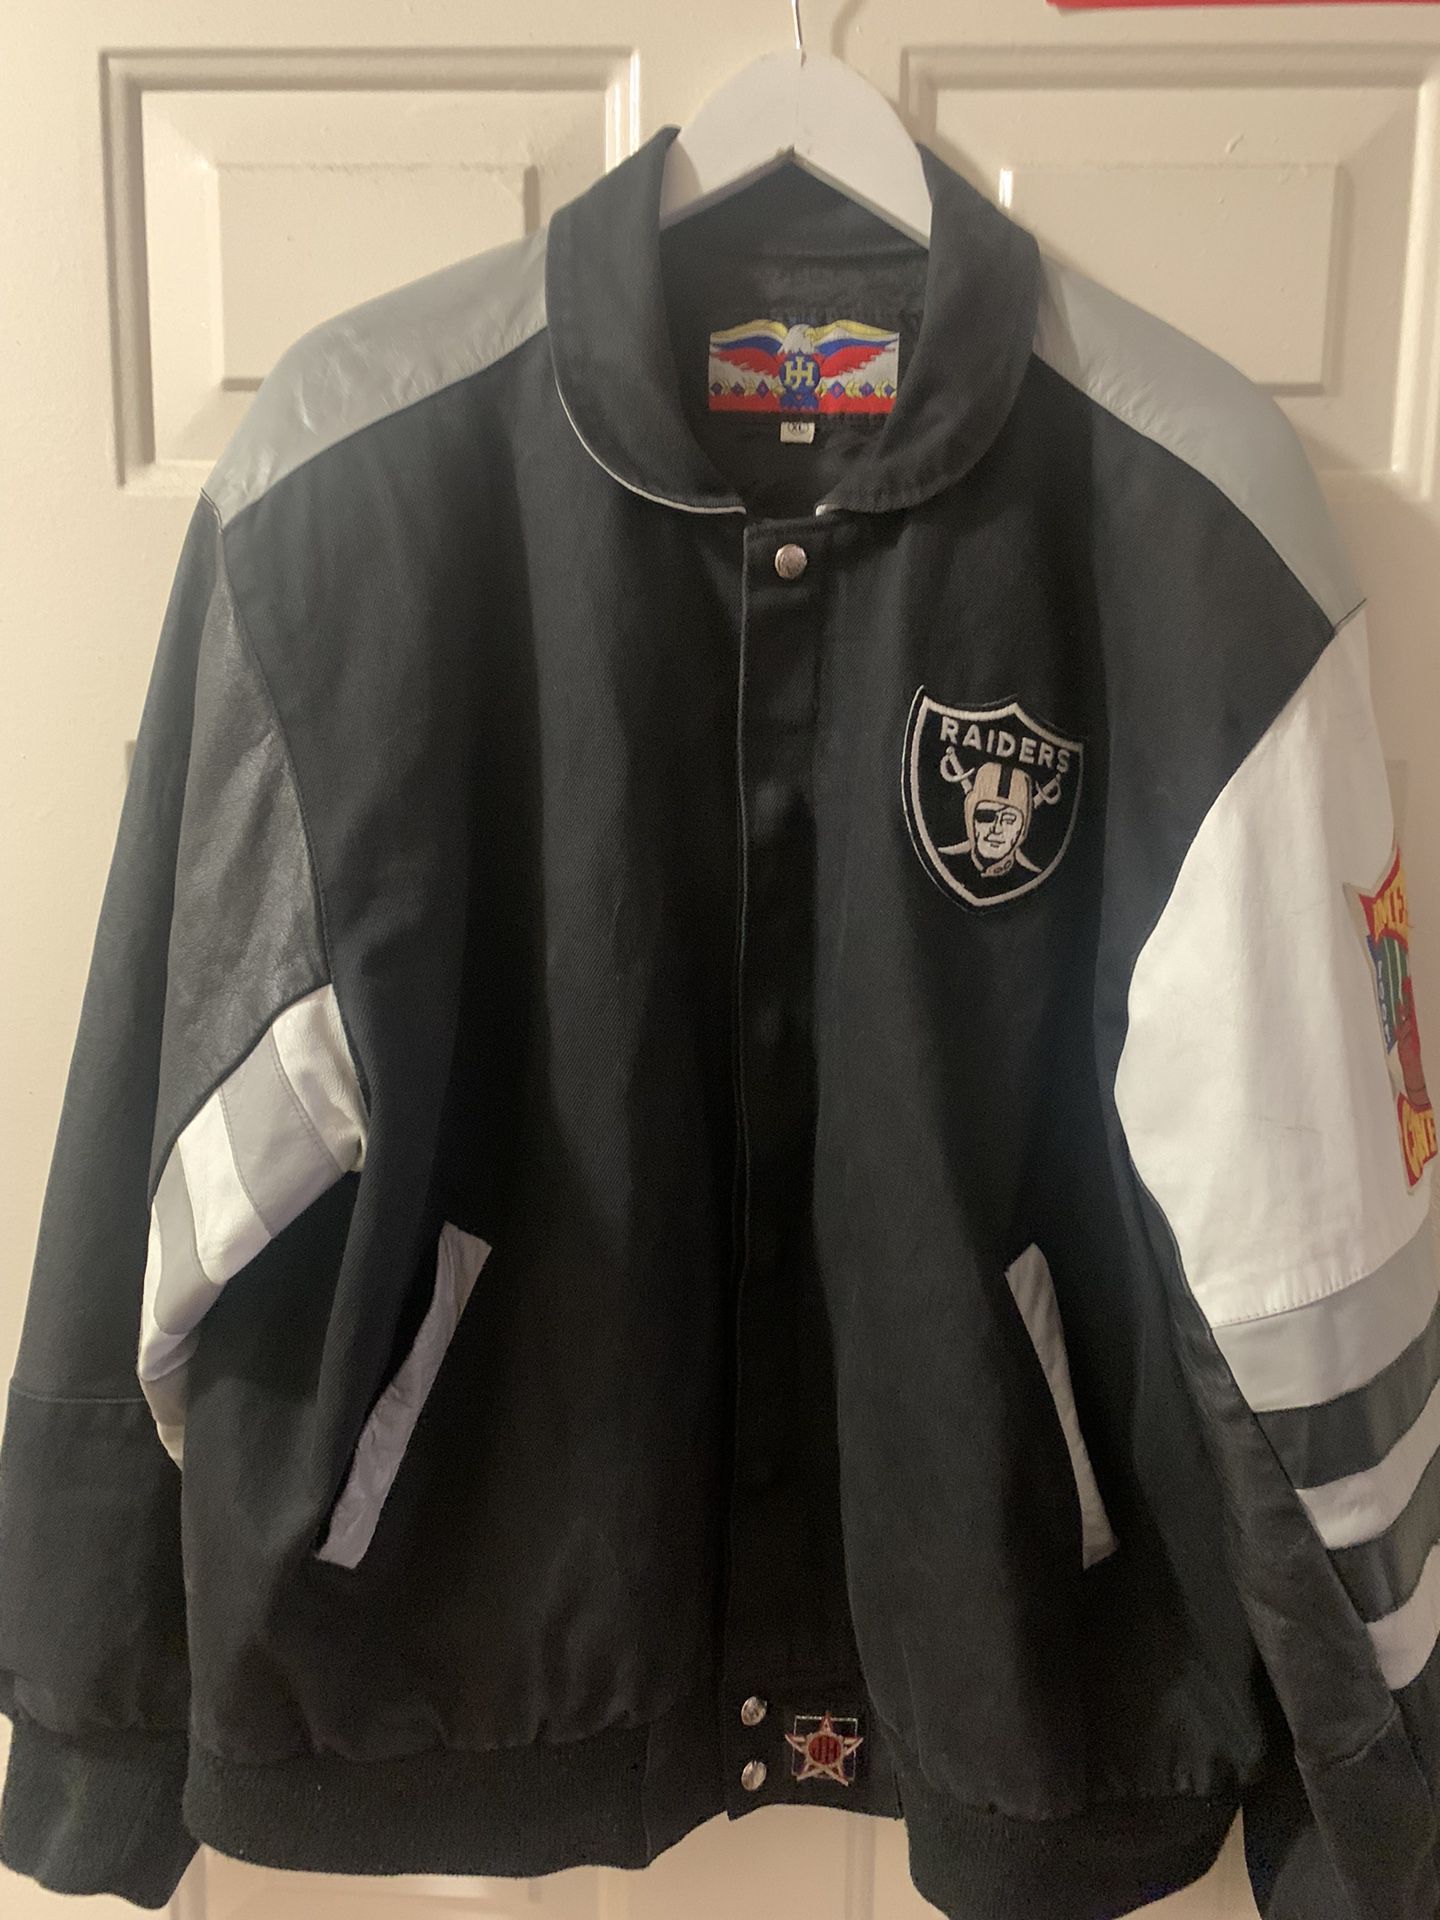 Raiders Leather Jacket